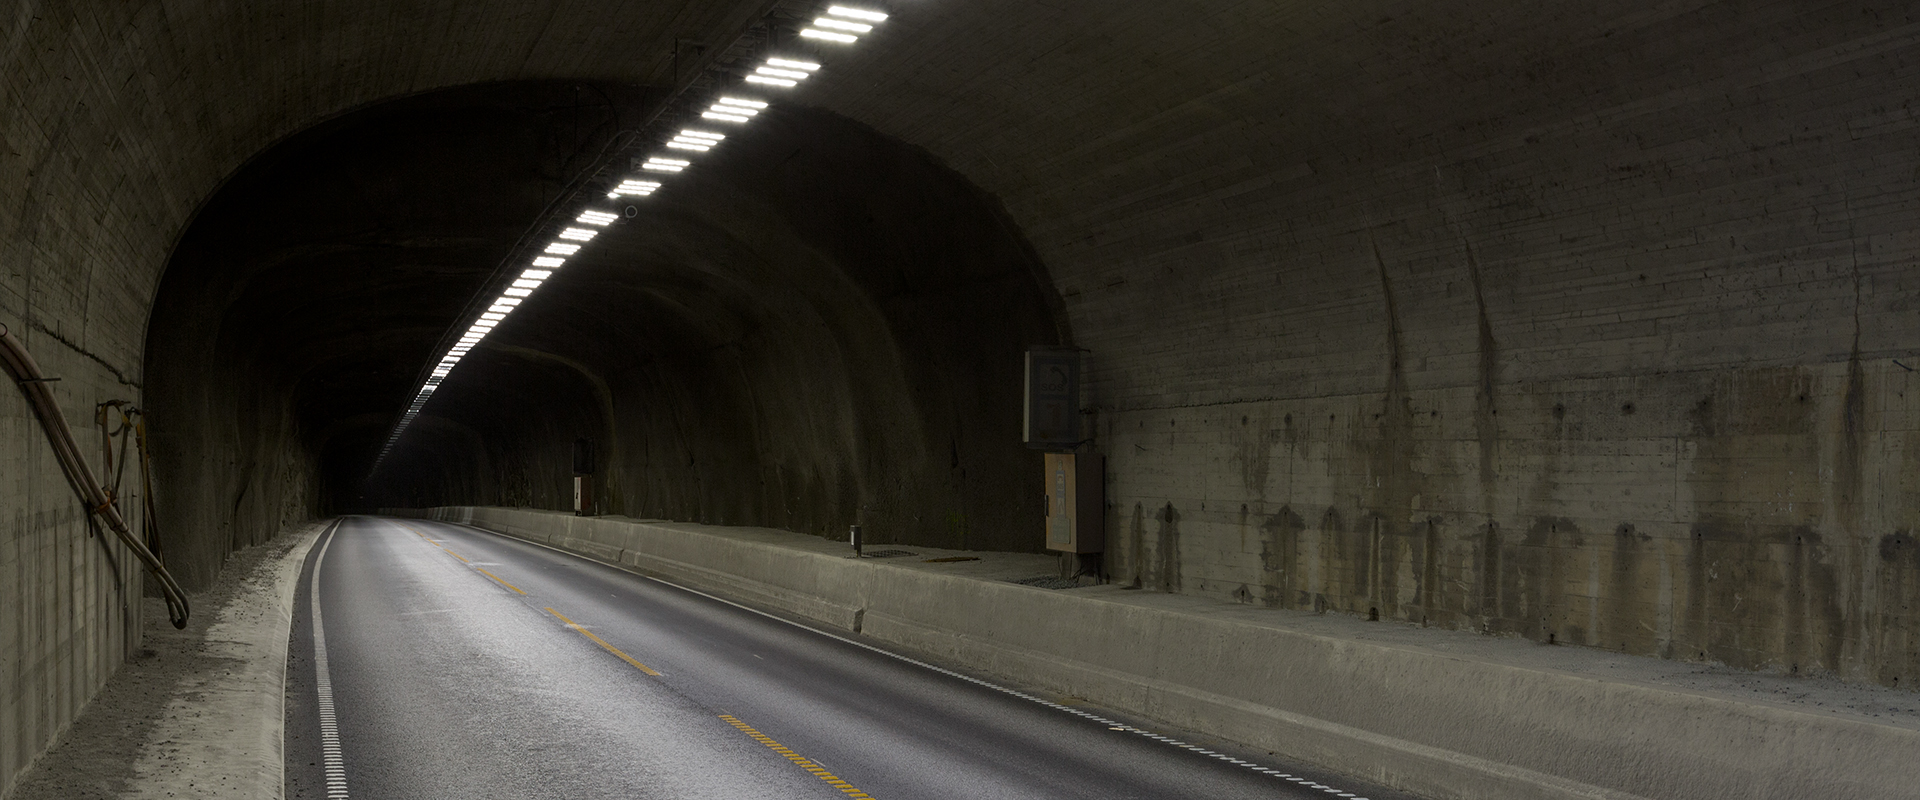 LED tunnel lighting of Mundalsberg Tunnel